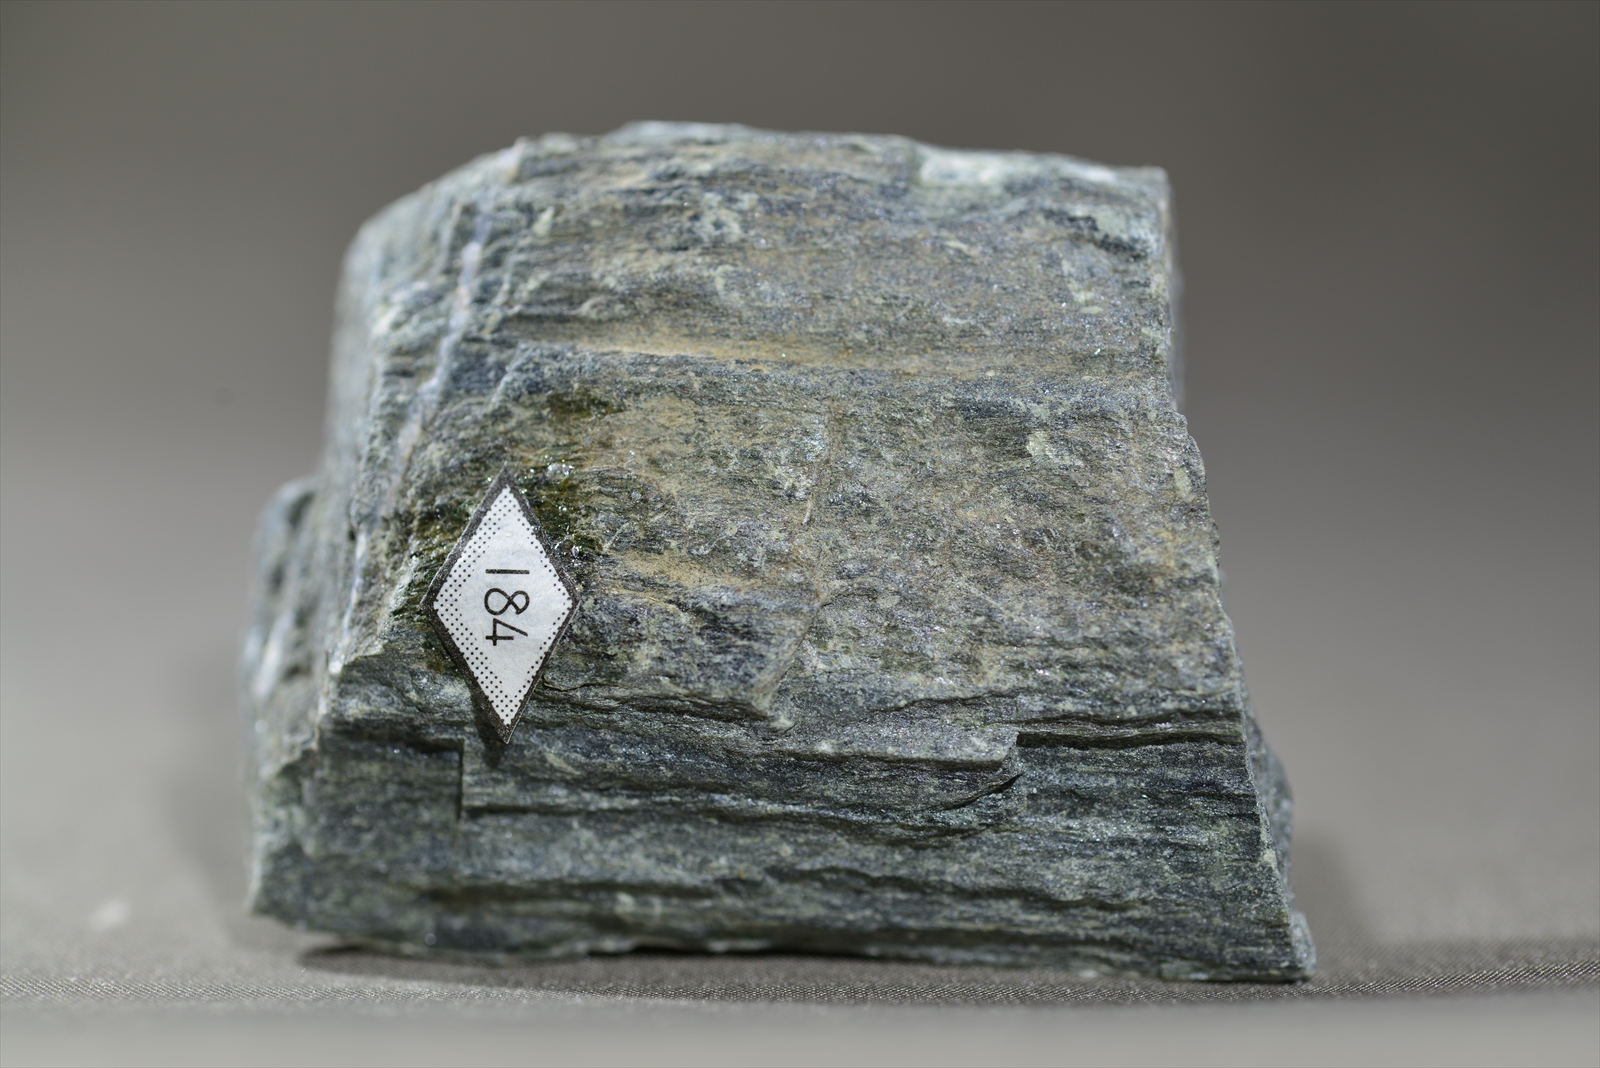 スティルプノメレンアクチノ閃石片岩(Stilpnomelane-actinolite schist)